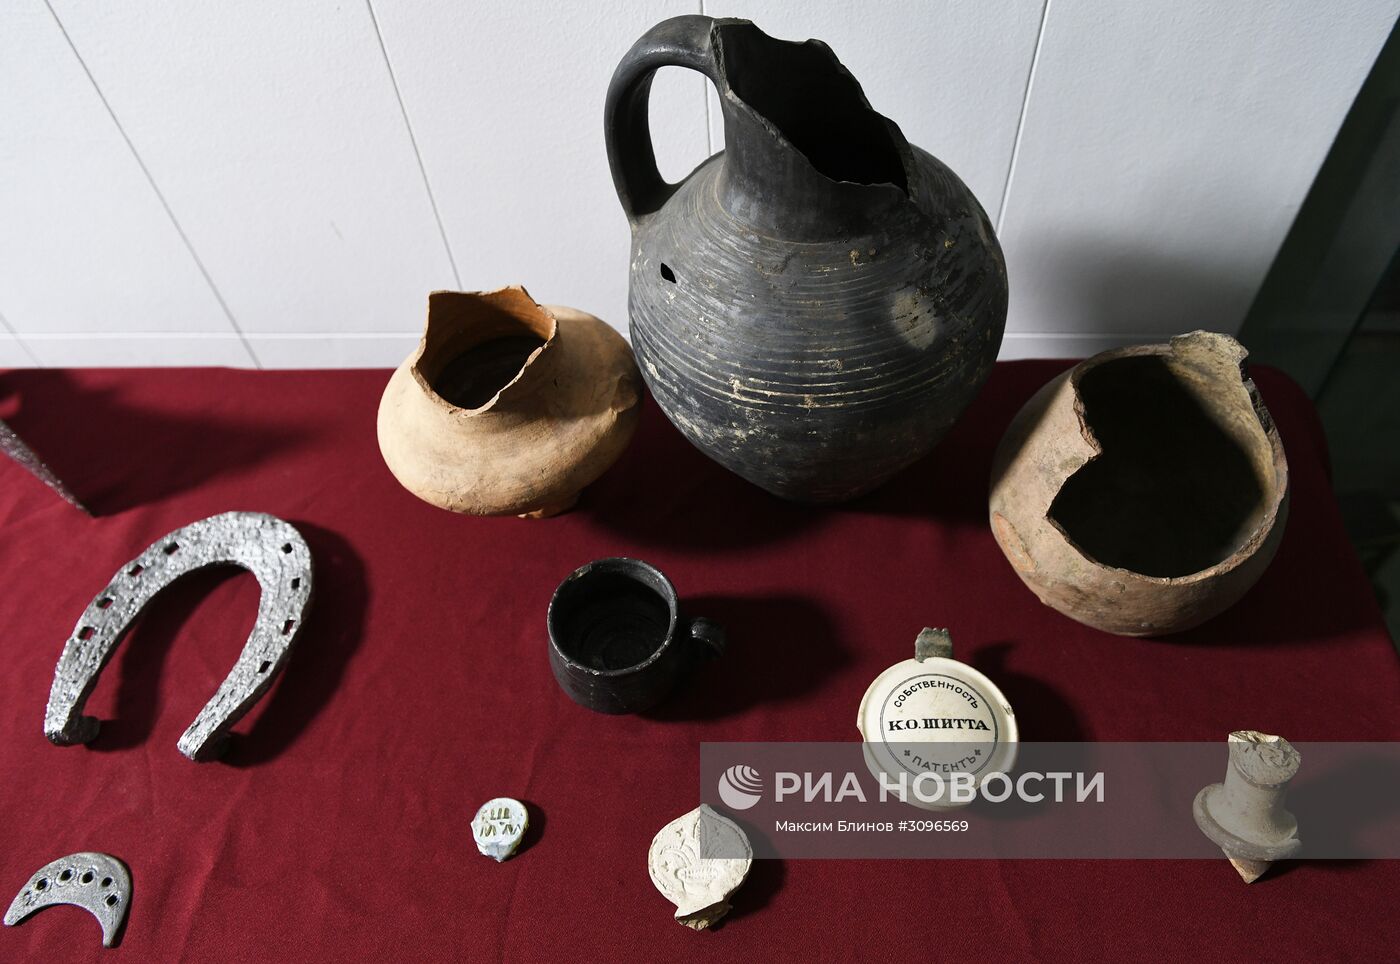 Показ археологических находок, найденных в рамках благоустройства Москвы